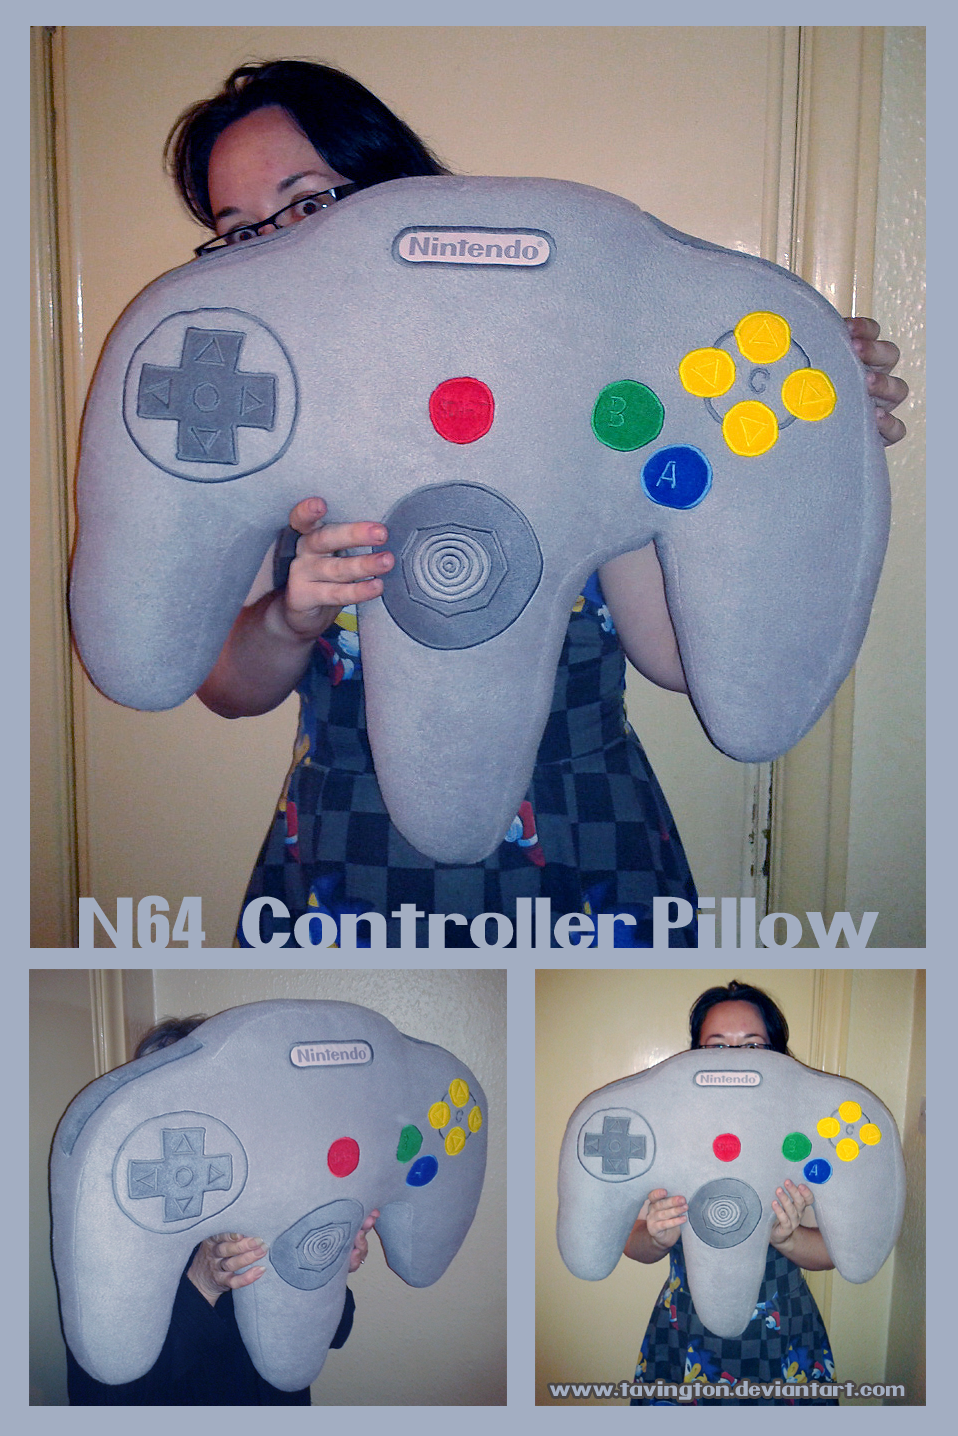 N64 Controller Pillow